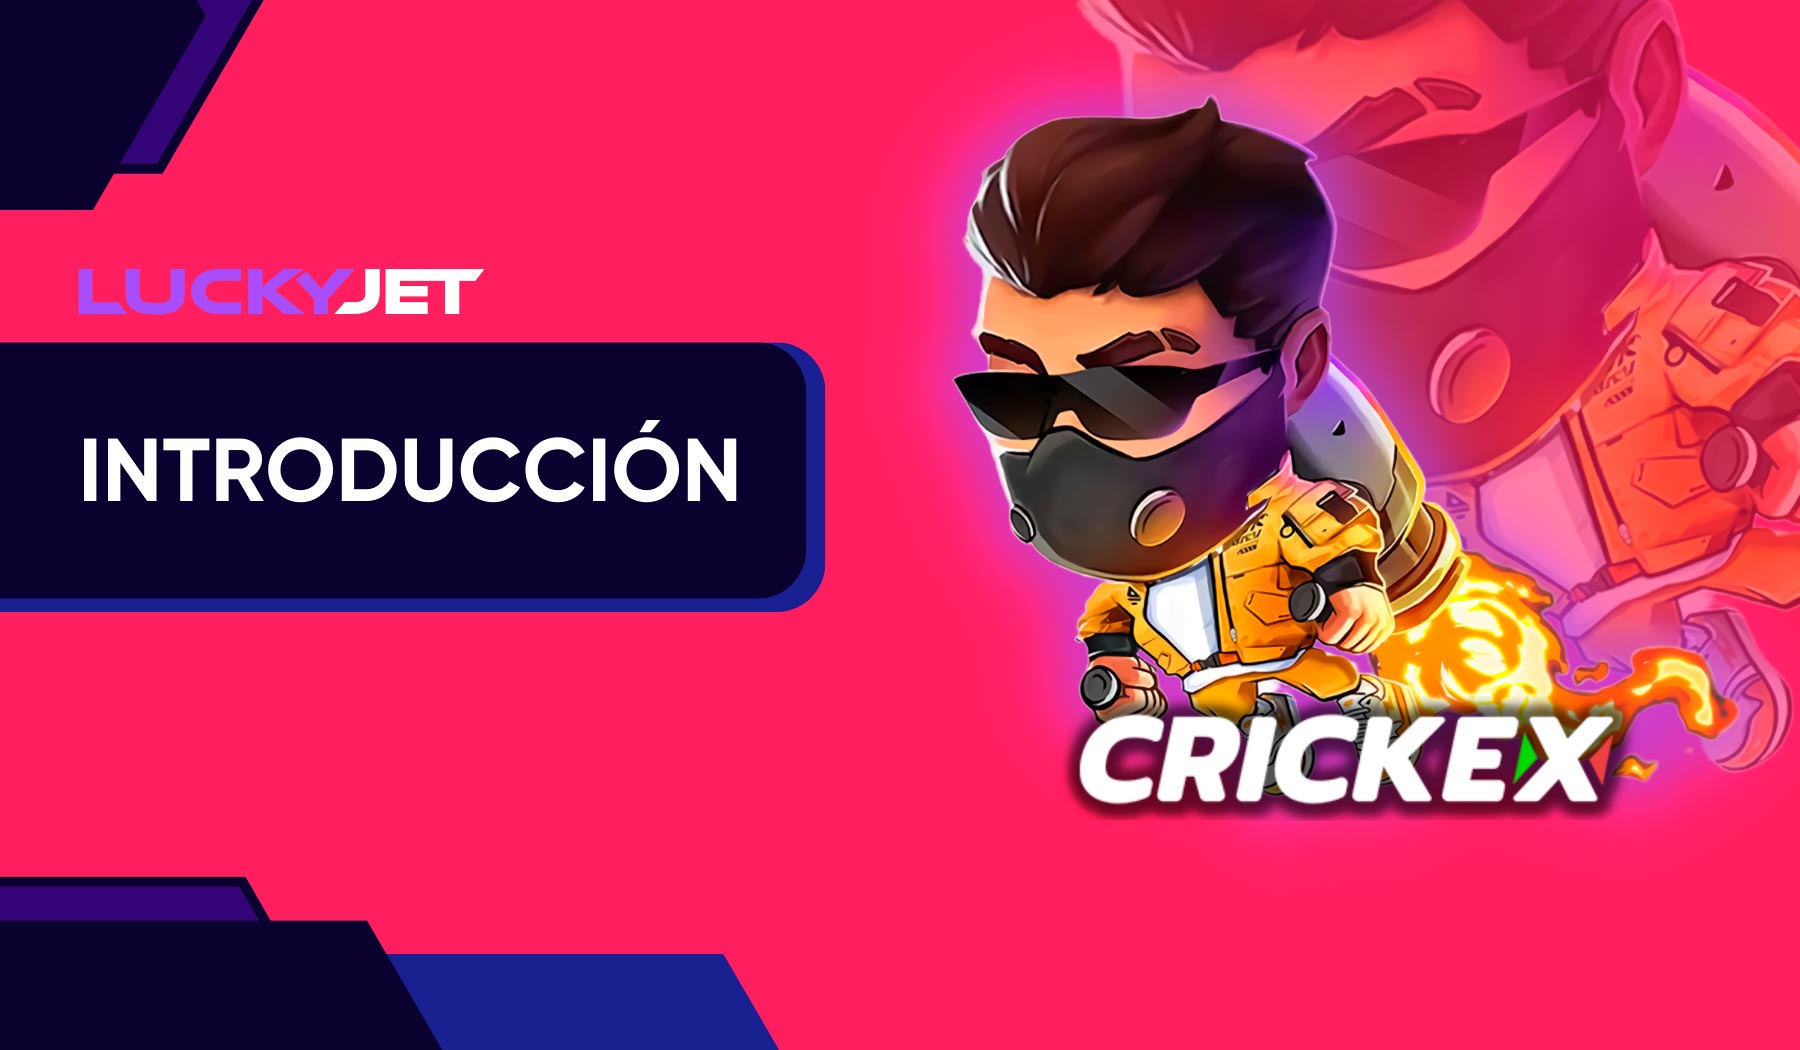 Crickex representa una tendencia en el juego con Lucky Jet